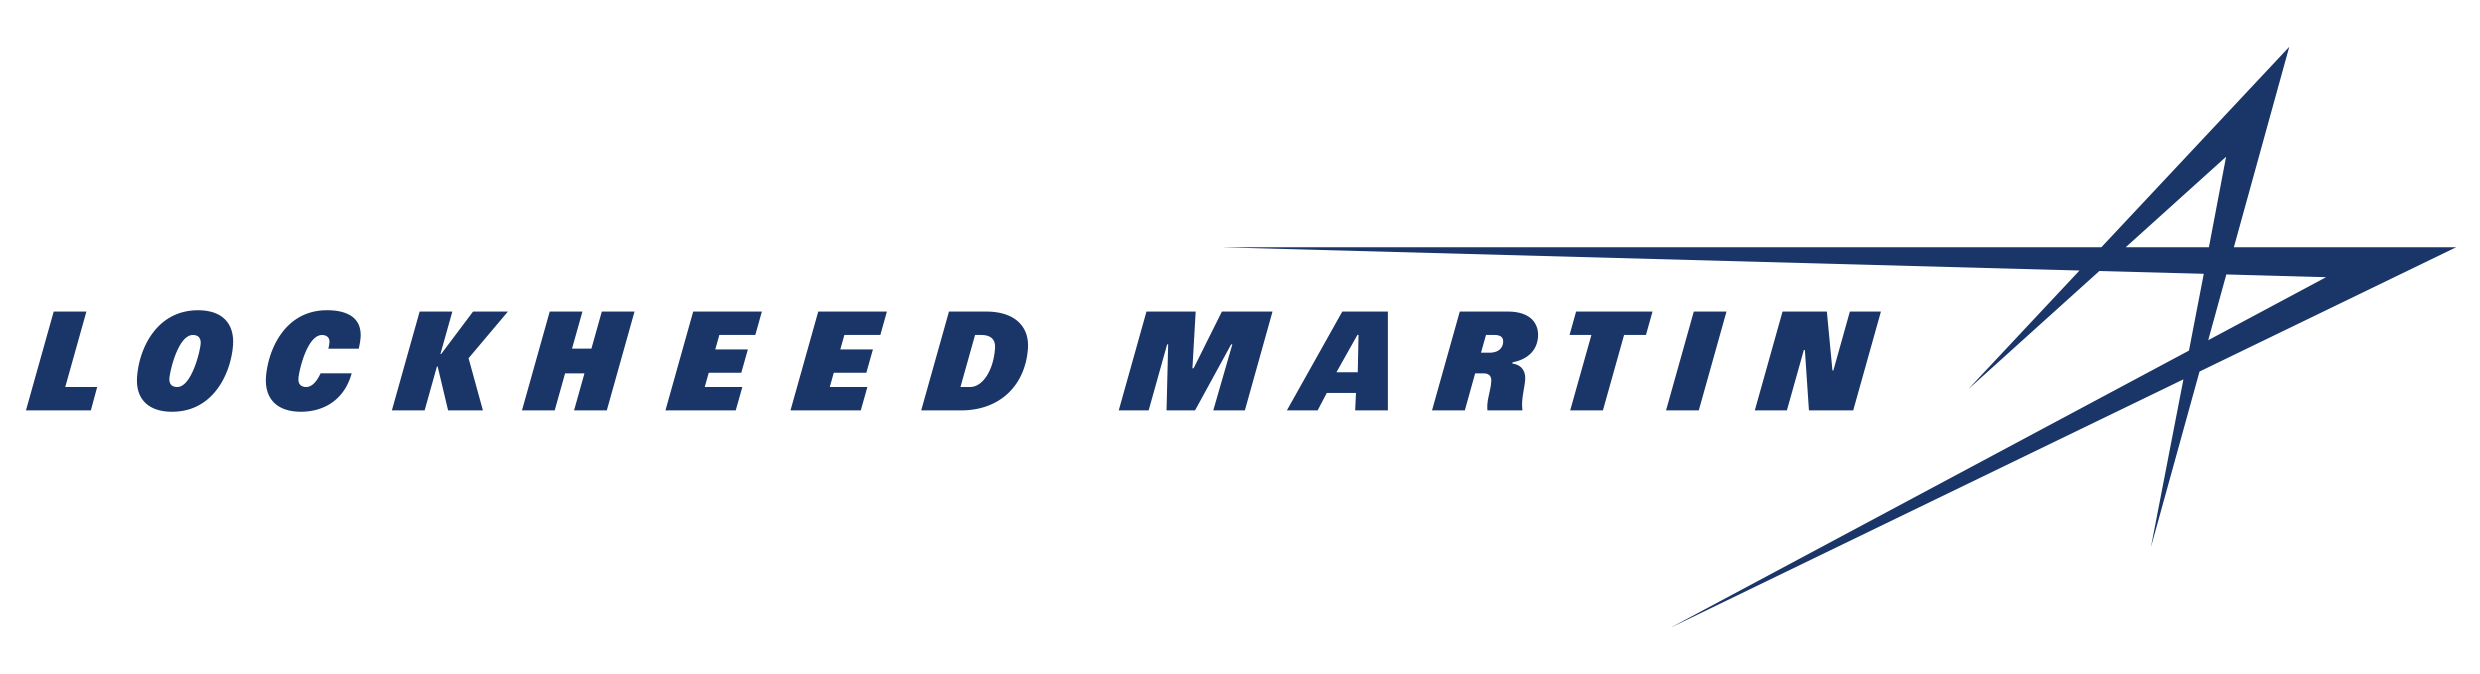 American Information Technology Company Logo - Lockheed Martin Corporation | Lockheed Martin